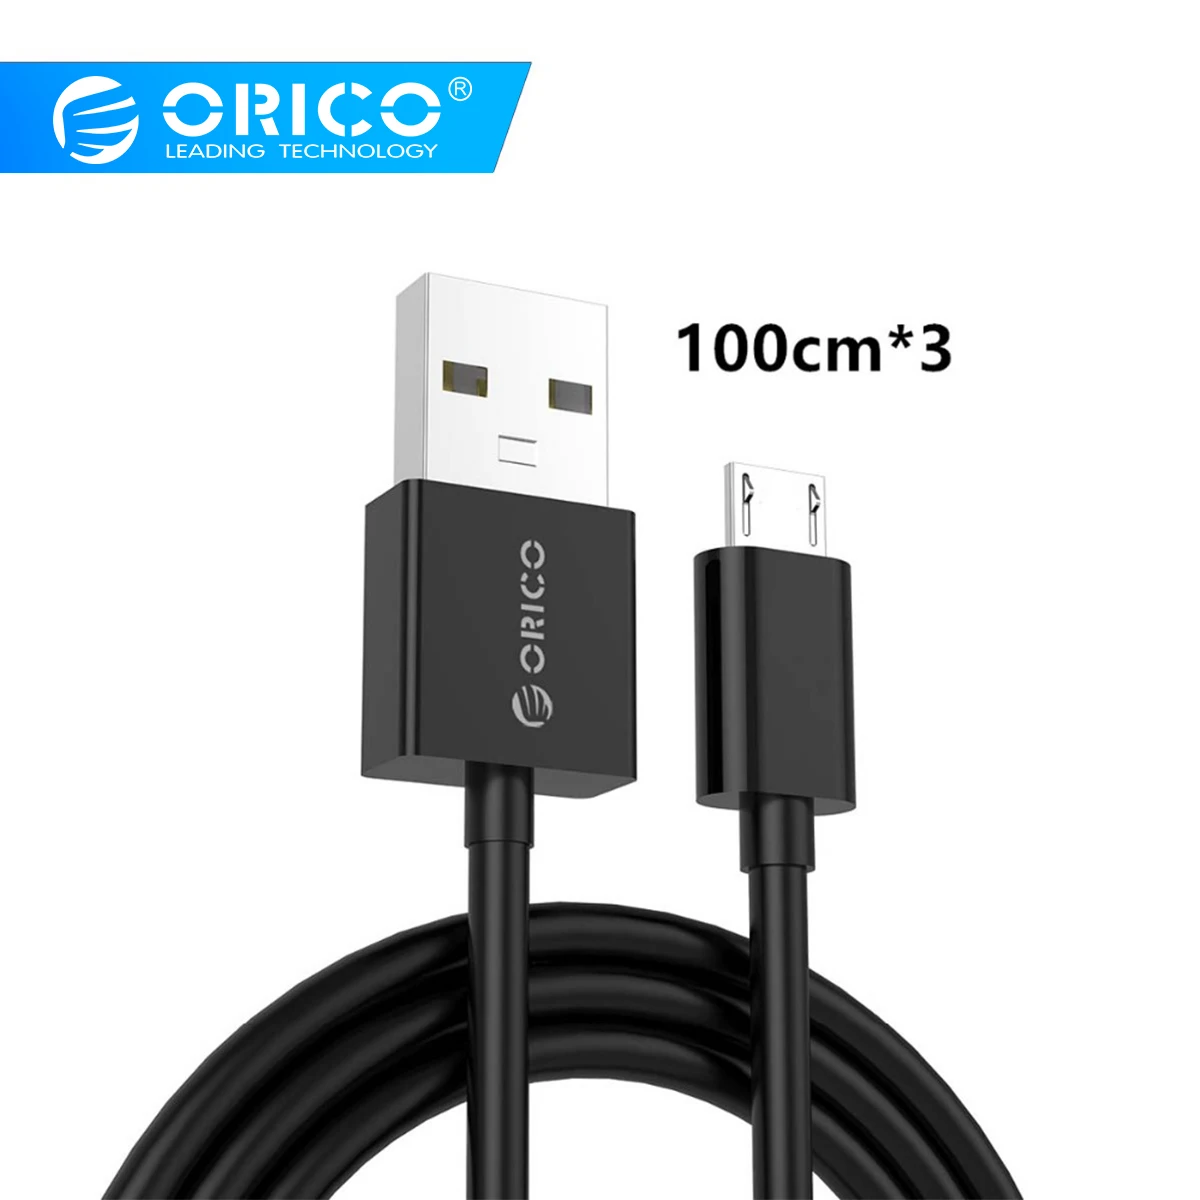 ORICO ADC-S2 3 шт./лот Micro USB 2,0 кабель для зарядки и передачи данных для смартфонов 100 см* 3 3 шт./лот-черный/белый